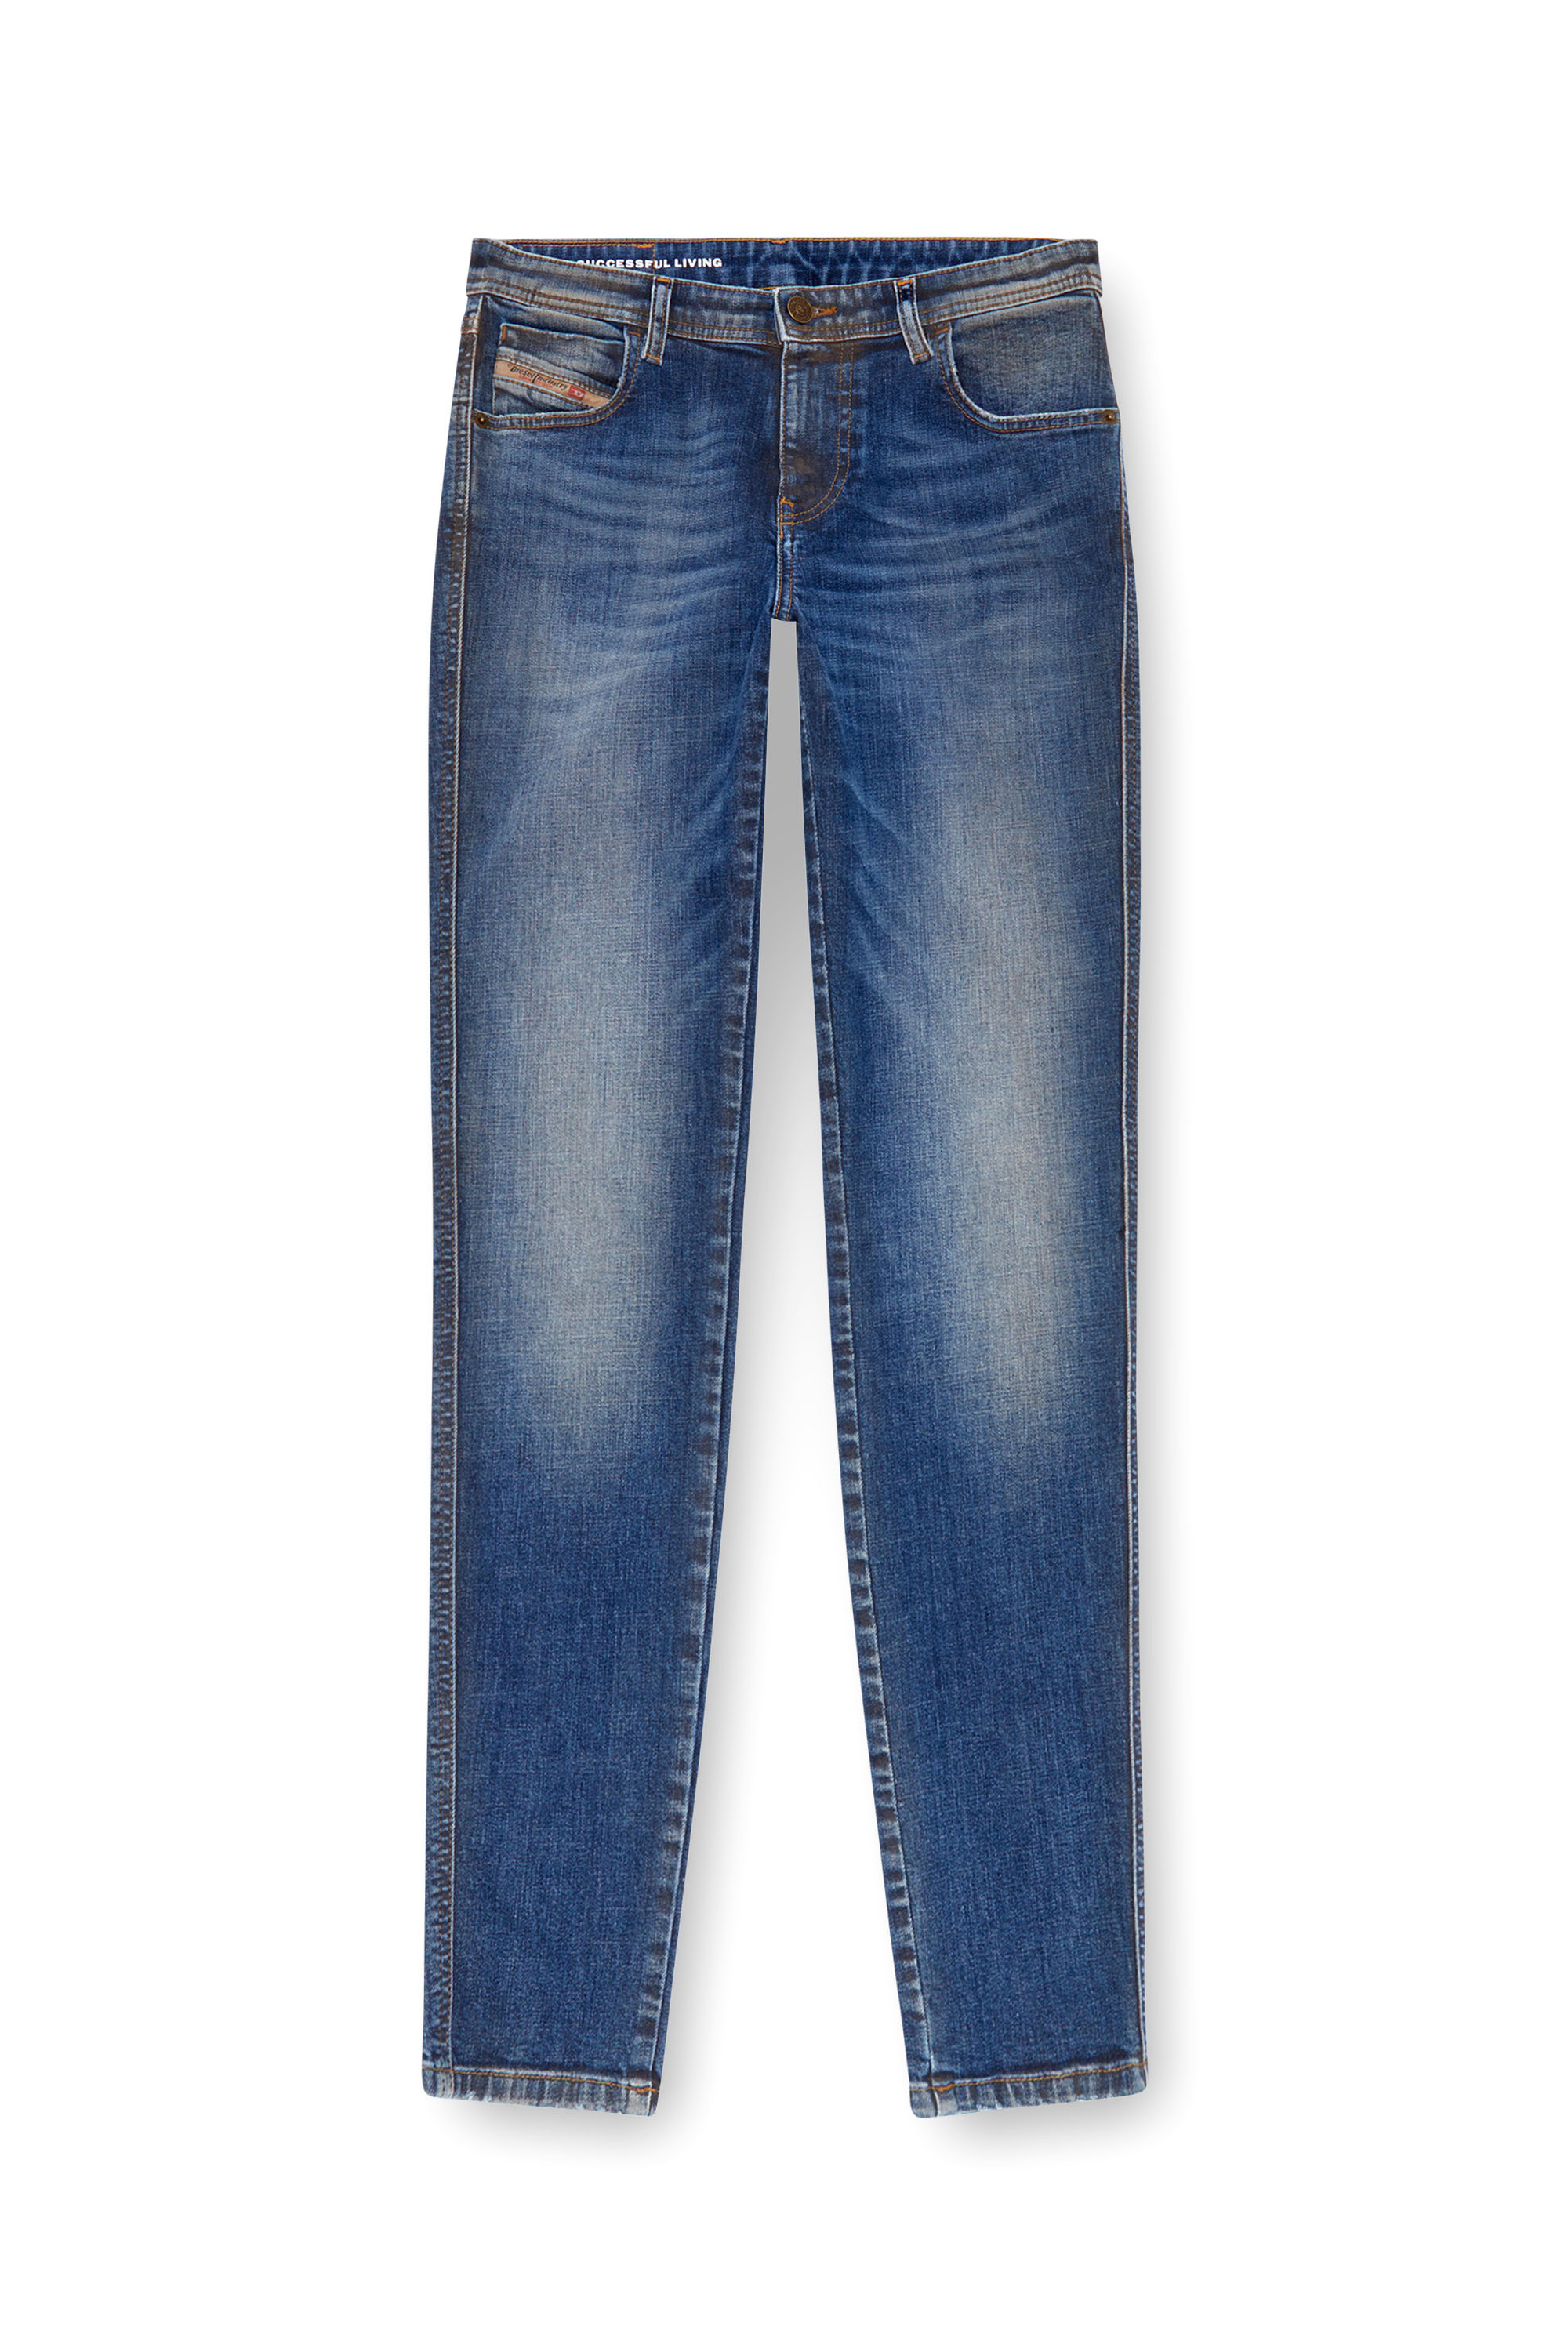 Diesel - Skinny Jeans 2015 Babhila 09J32, Mujer Skinny Jeans - 2015 Babhila in Azul marino - Image 5